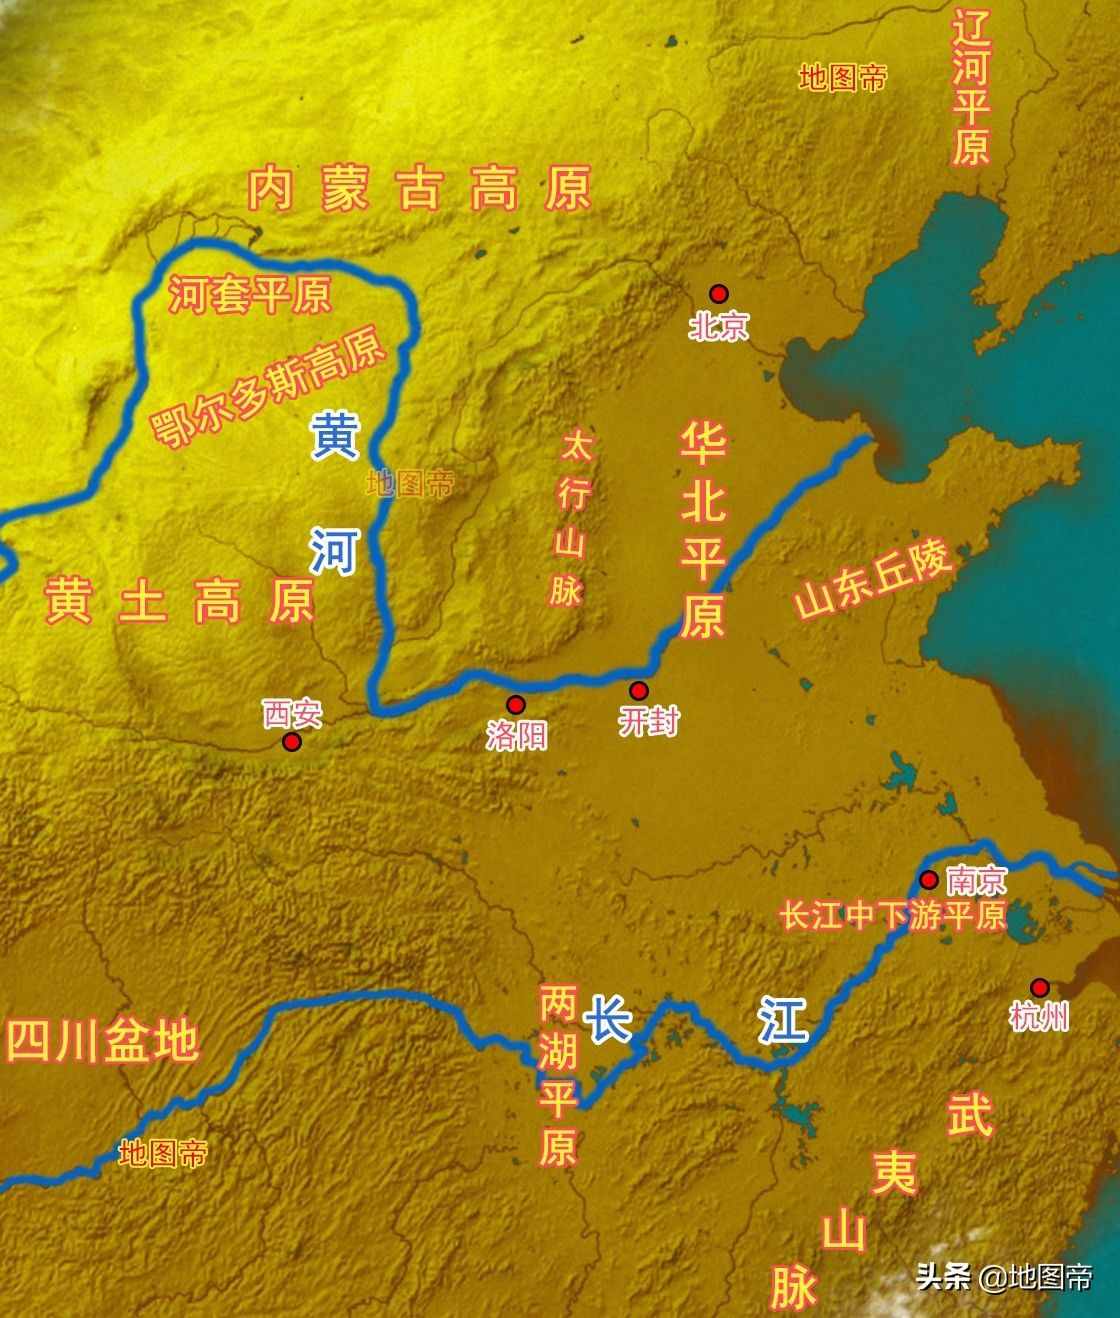 曾经的六朝古都，曹操的建都之地邺城，为何消失在历史长河中？